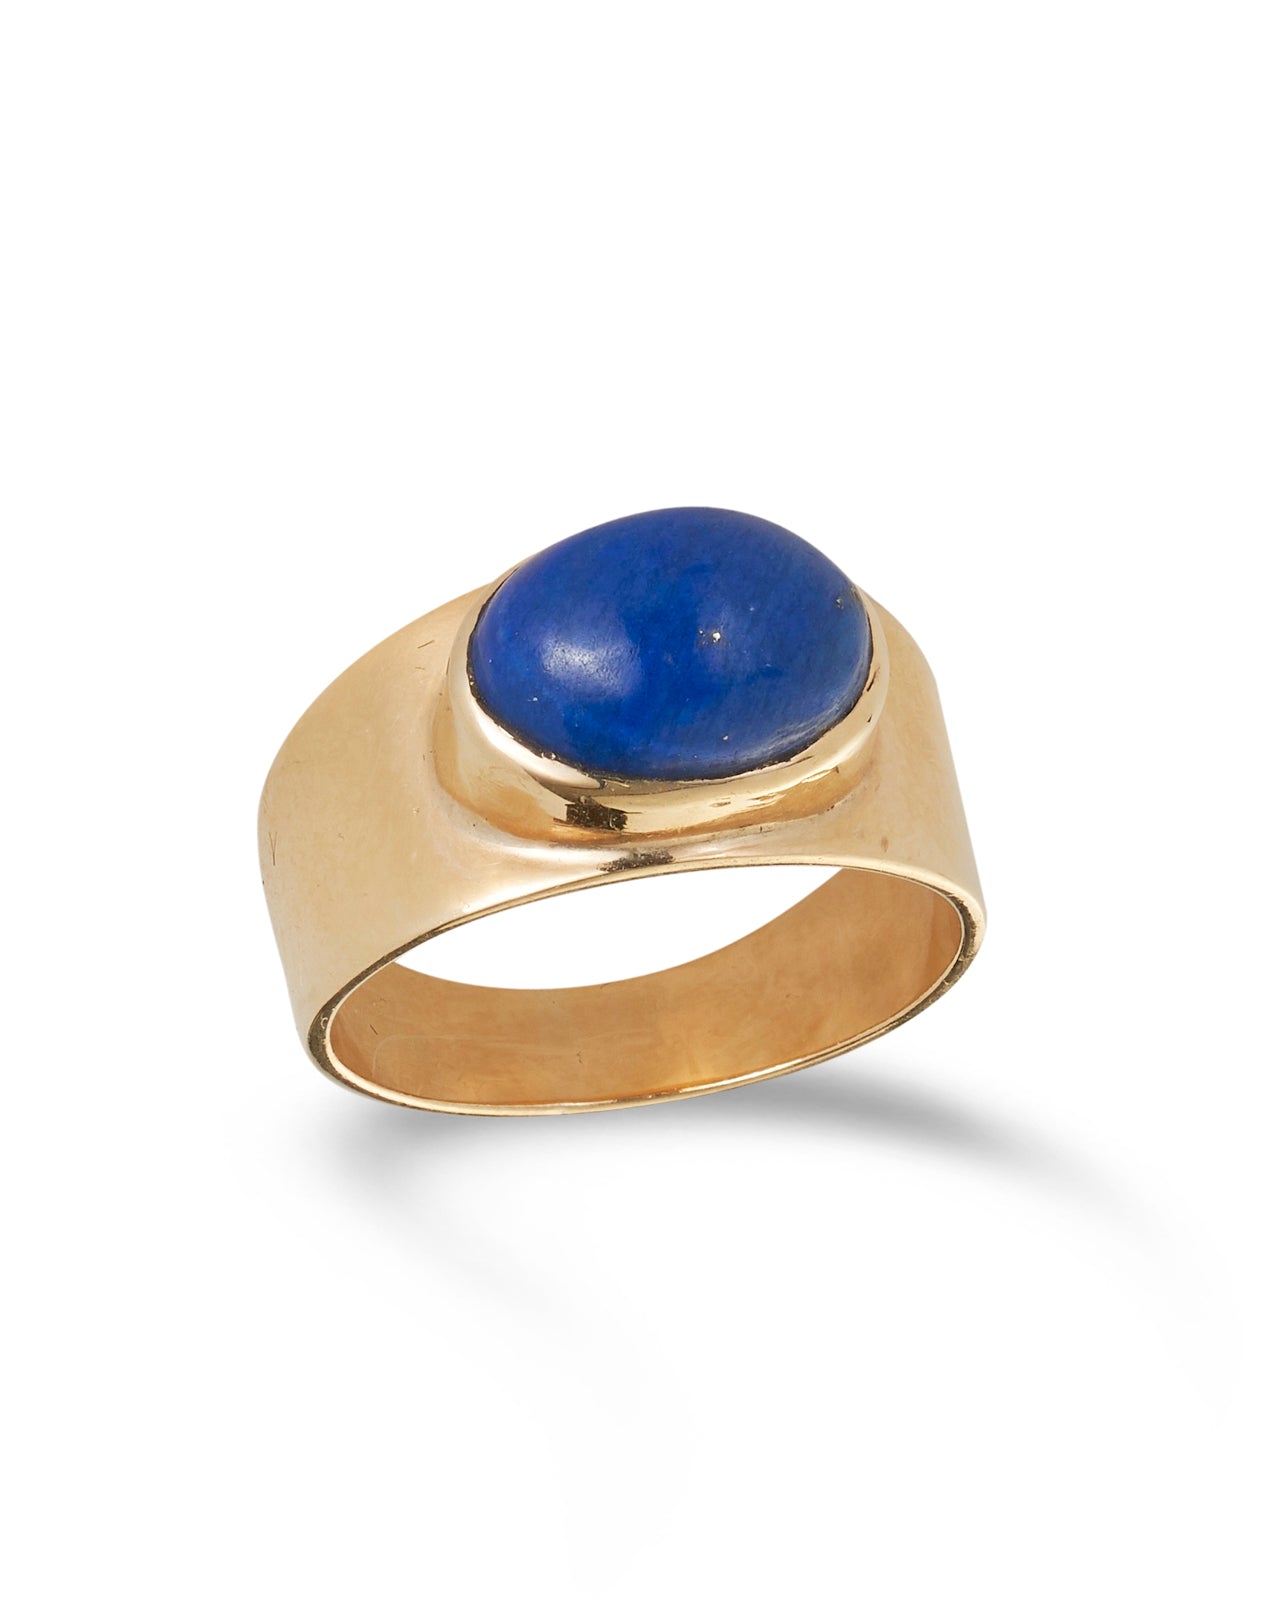 Vintage Lapis Lazuli Signet Ring